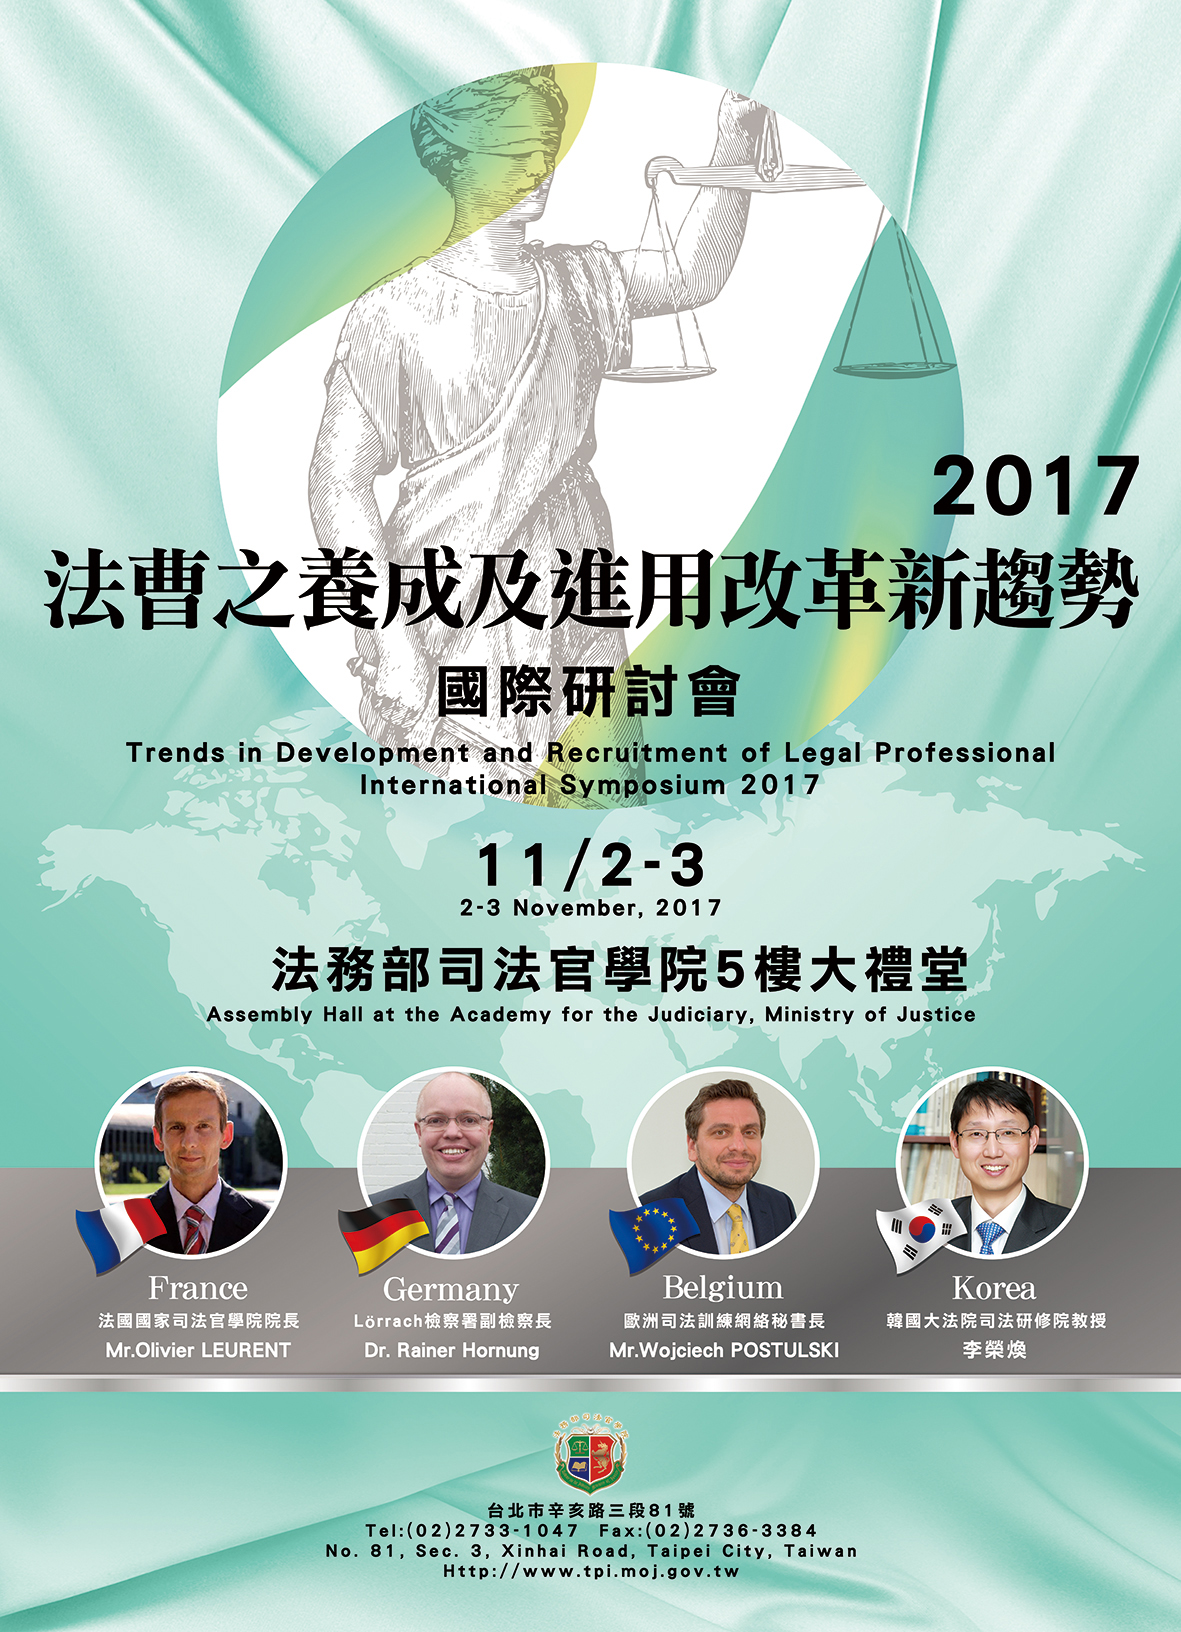 「法曹之養成及進用改革新趨勢」國際研討會